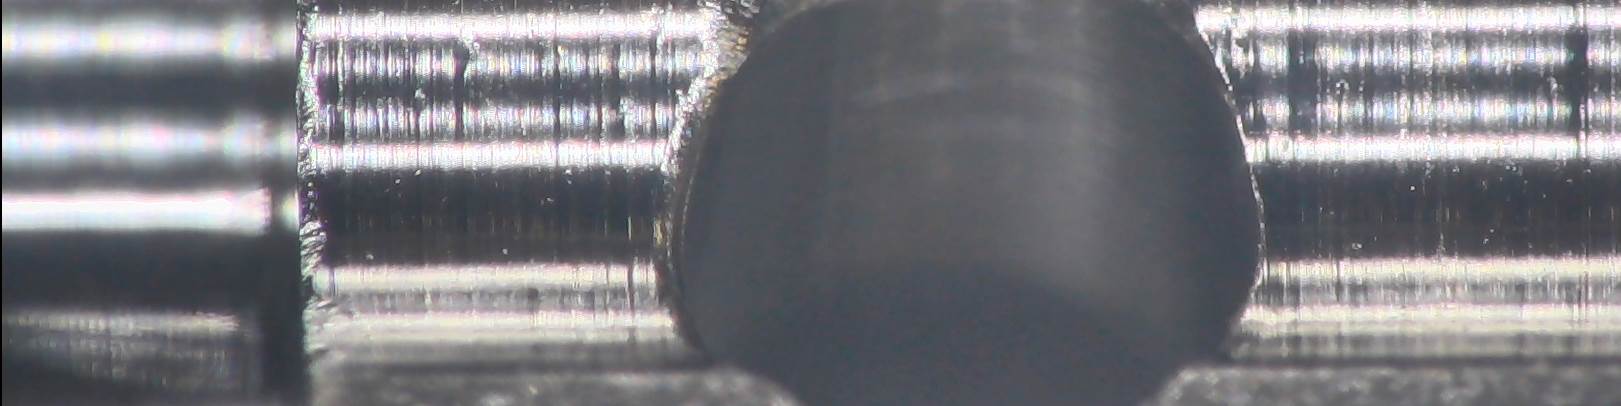 La Orbitool, de J.W. Done, que utiliza un disco para proteger las partes correctamente acabadas de los agujeros de perforación, se desprende de la pared en la intersección entre los agujeros para permitir que la cortadora proceda al desbarbado selectivo.